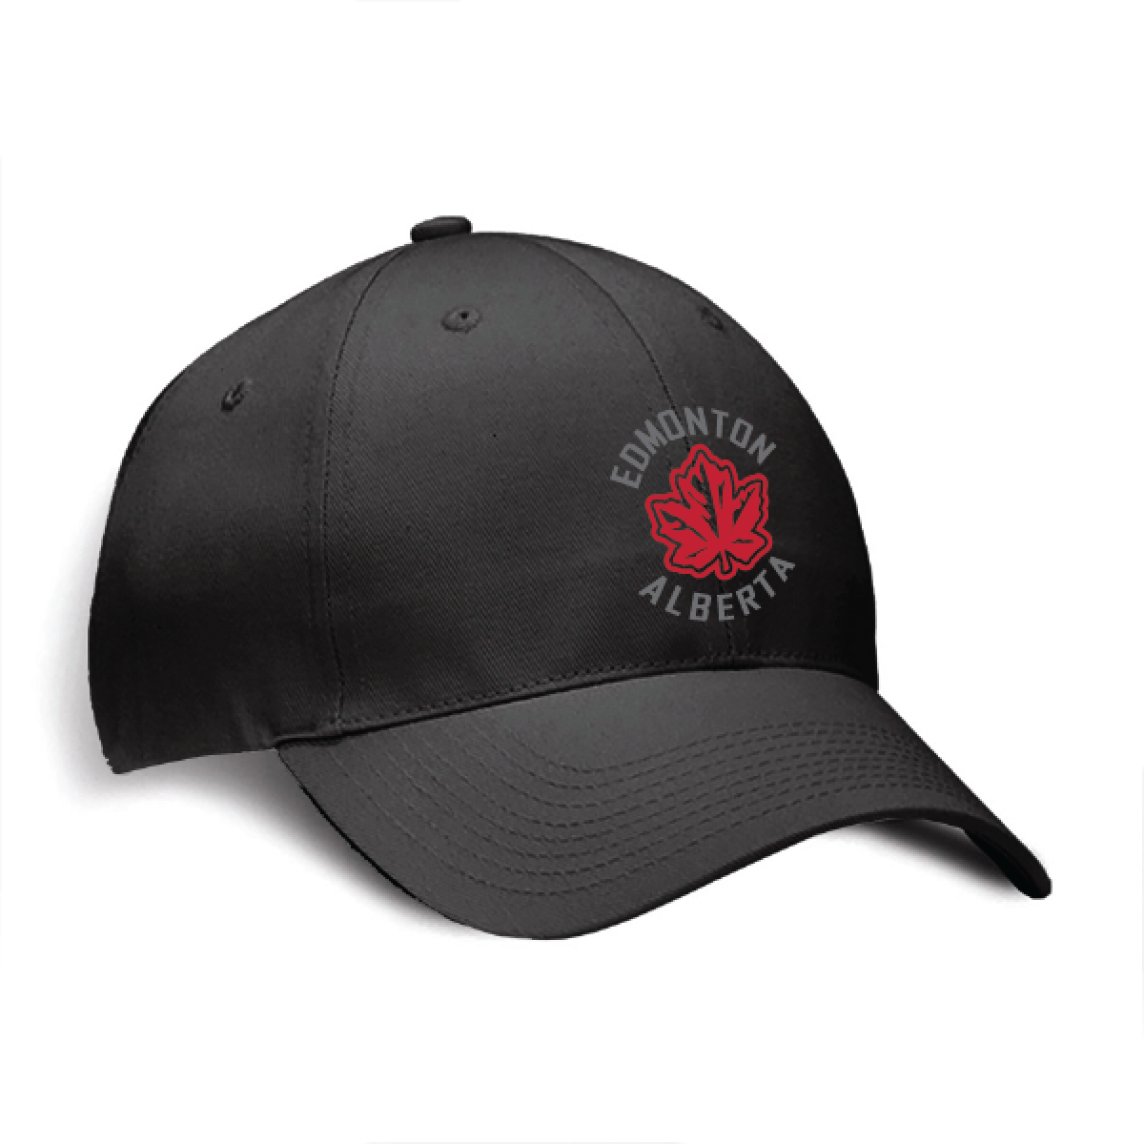 Embroidered OCG Edmonton Maple Leaf Alberta Classic Cap in Black